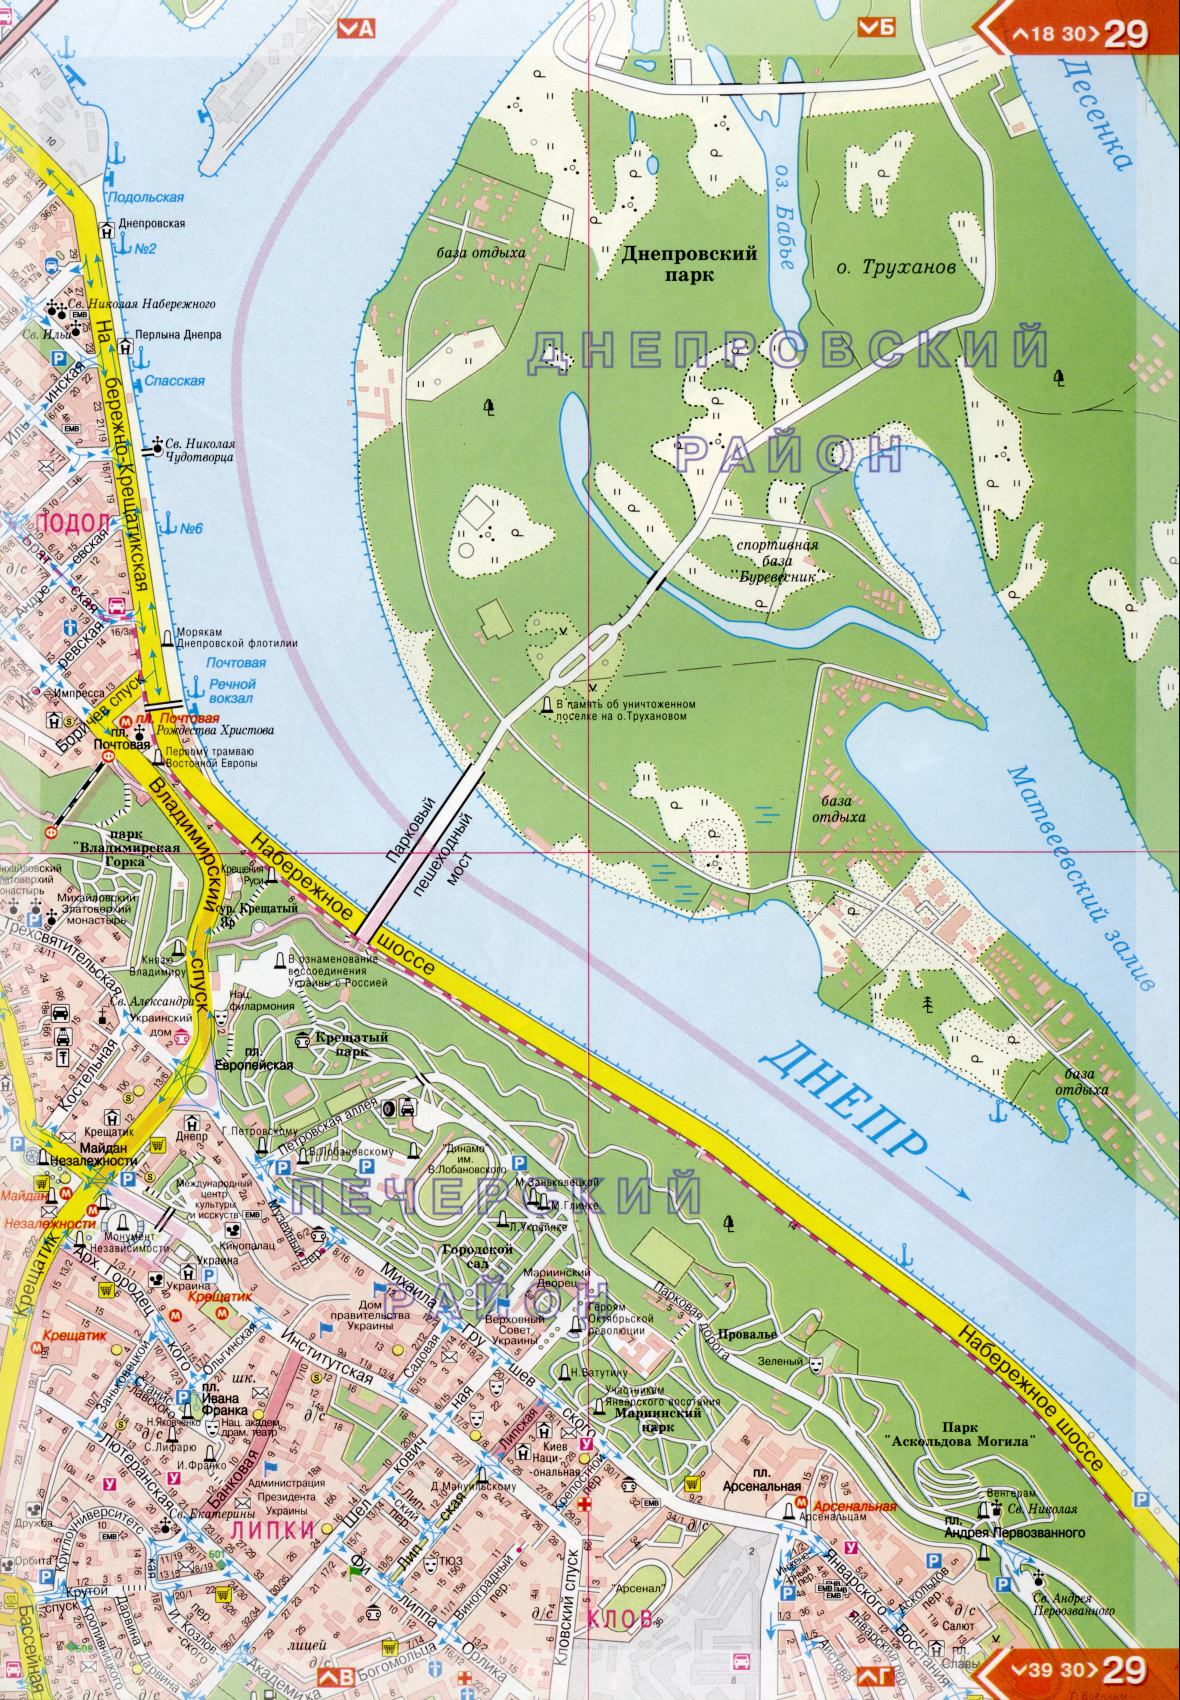 Карта Киева подробная в 1см=150м на 45 листах. Карта г.Киев из атласа автомобильных дорог. Скачать бесплатно подробную карту , F2